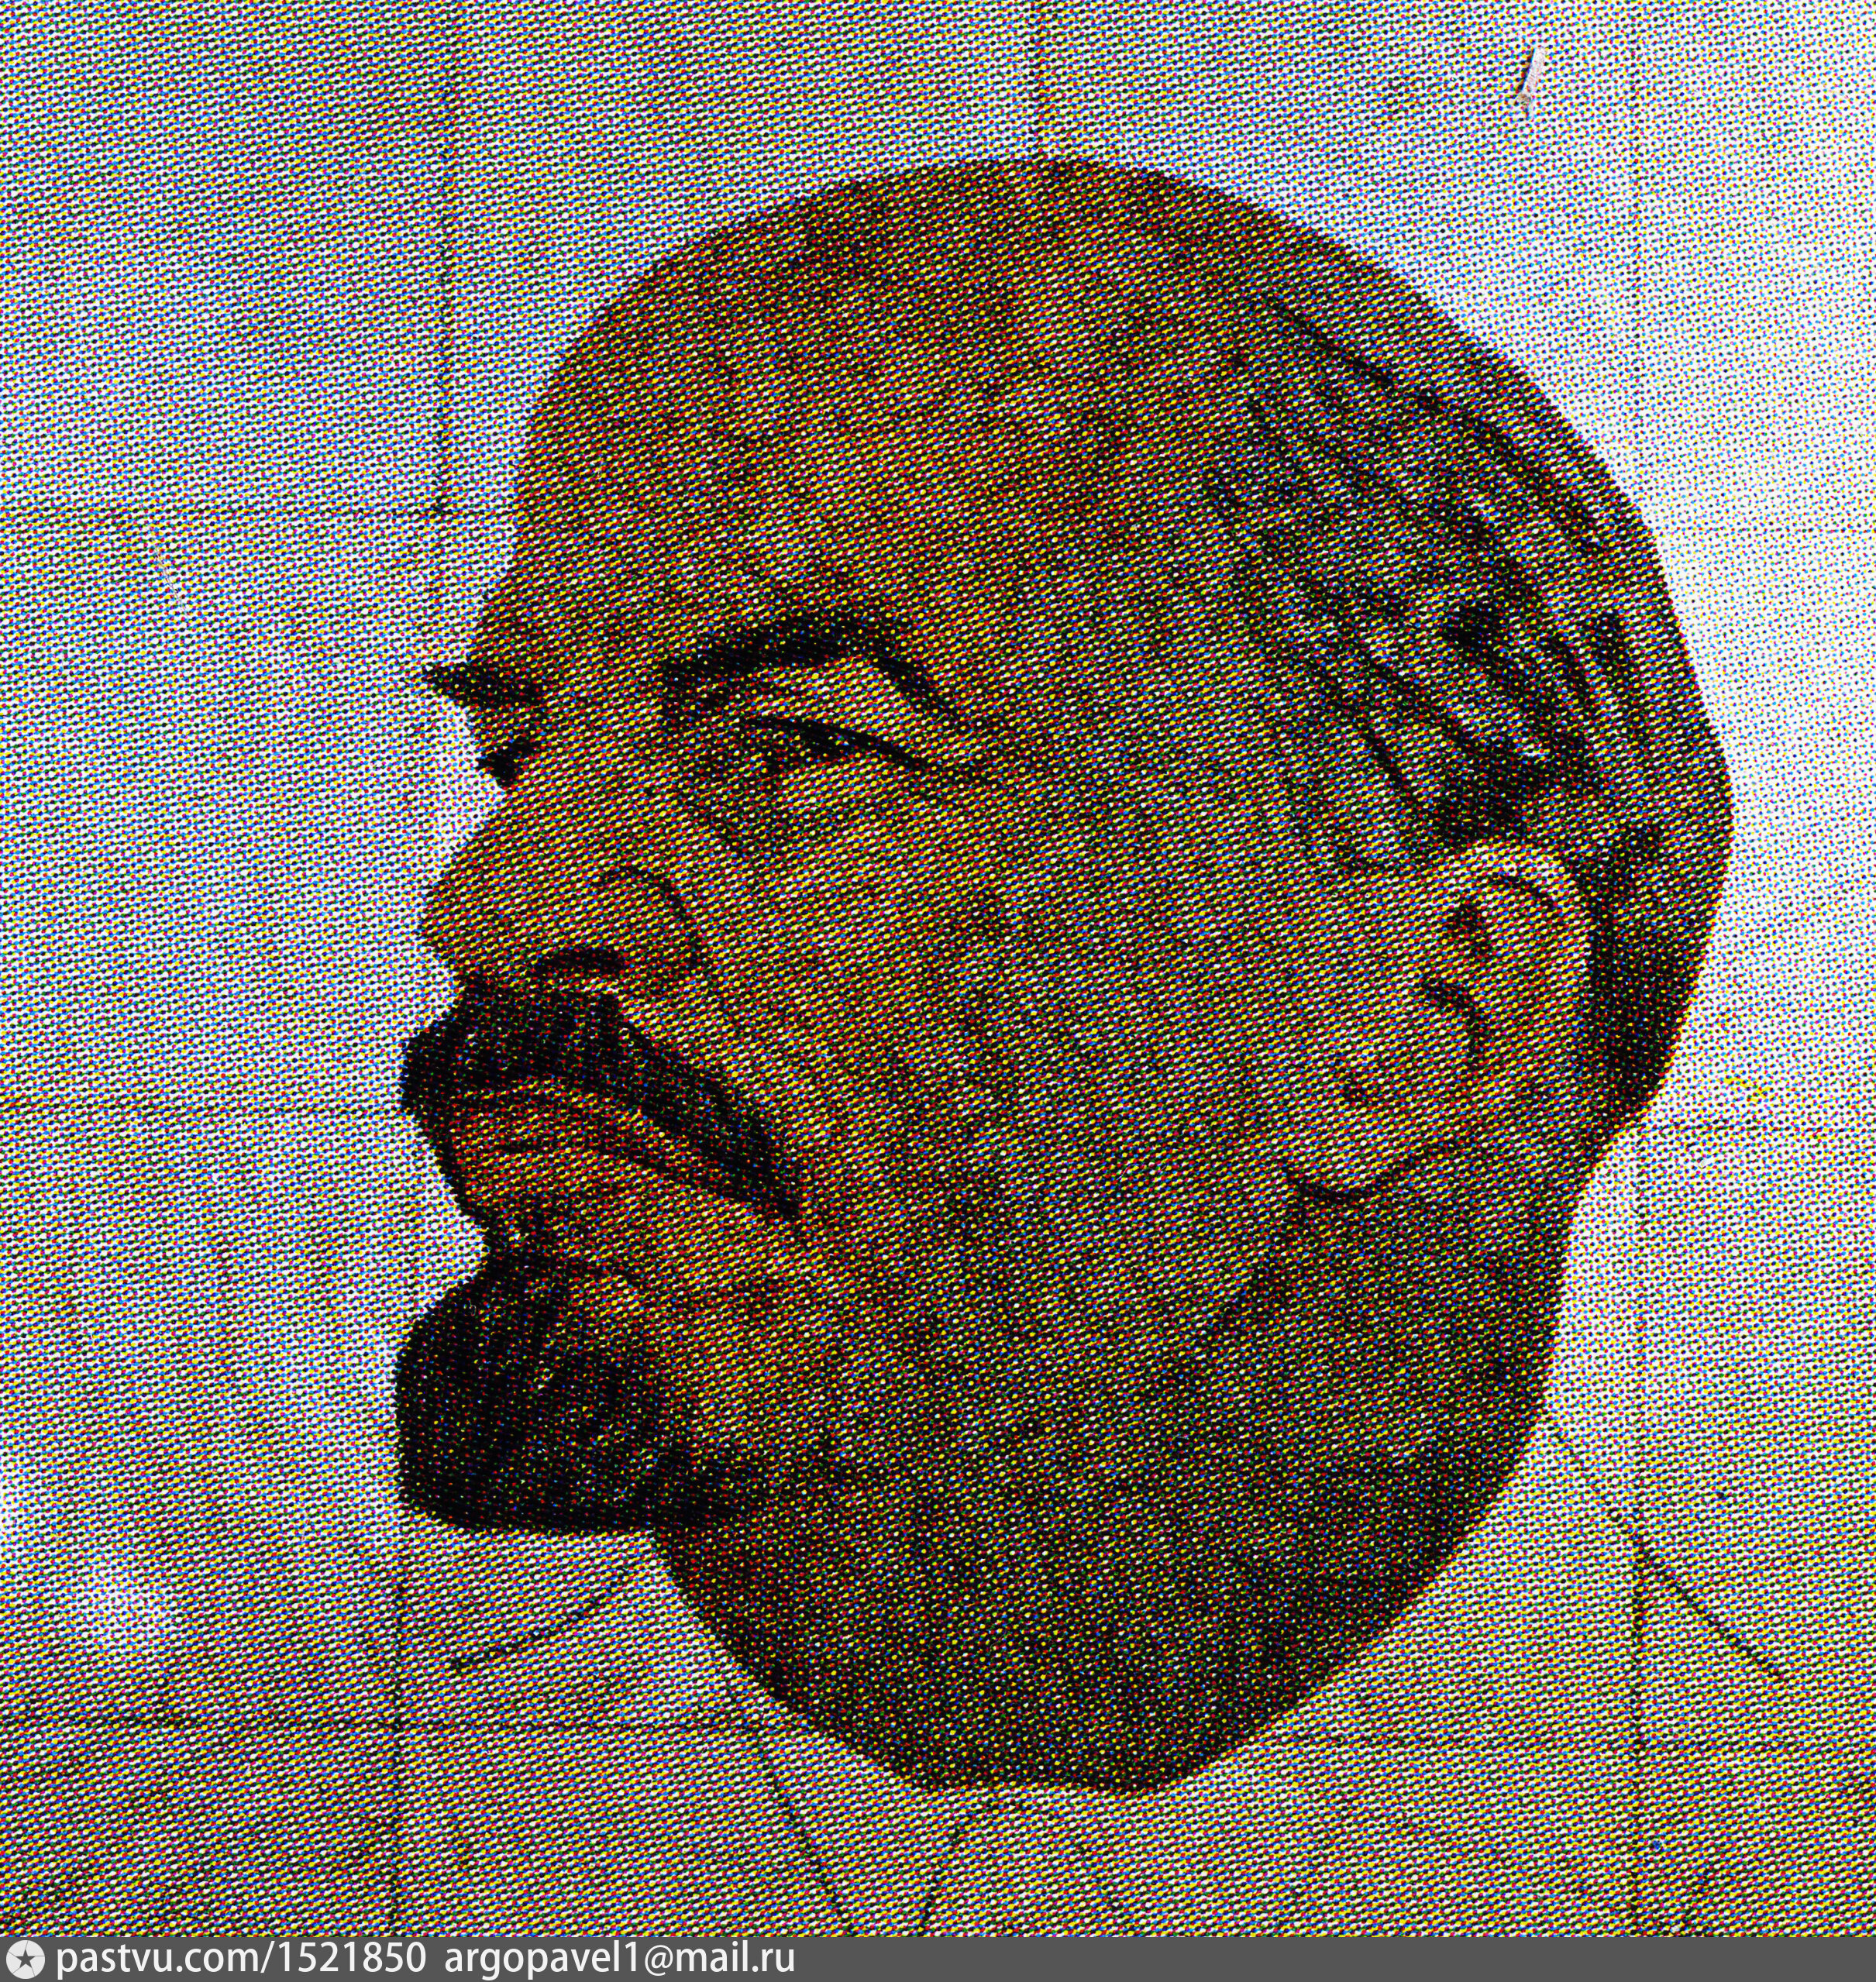 Прижизненный портрет Ленина